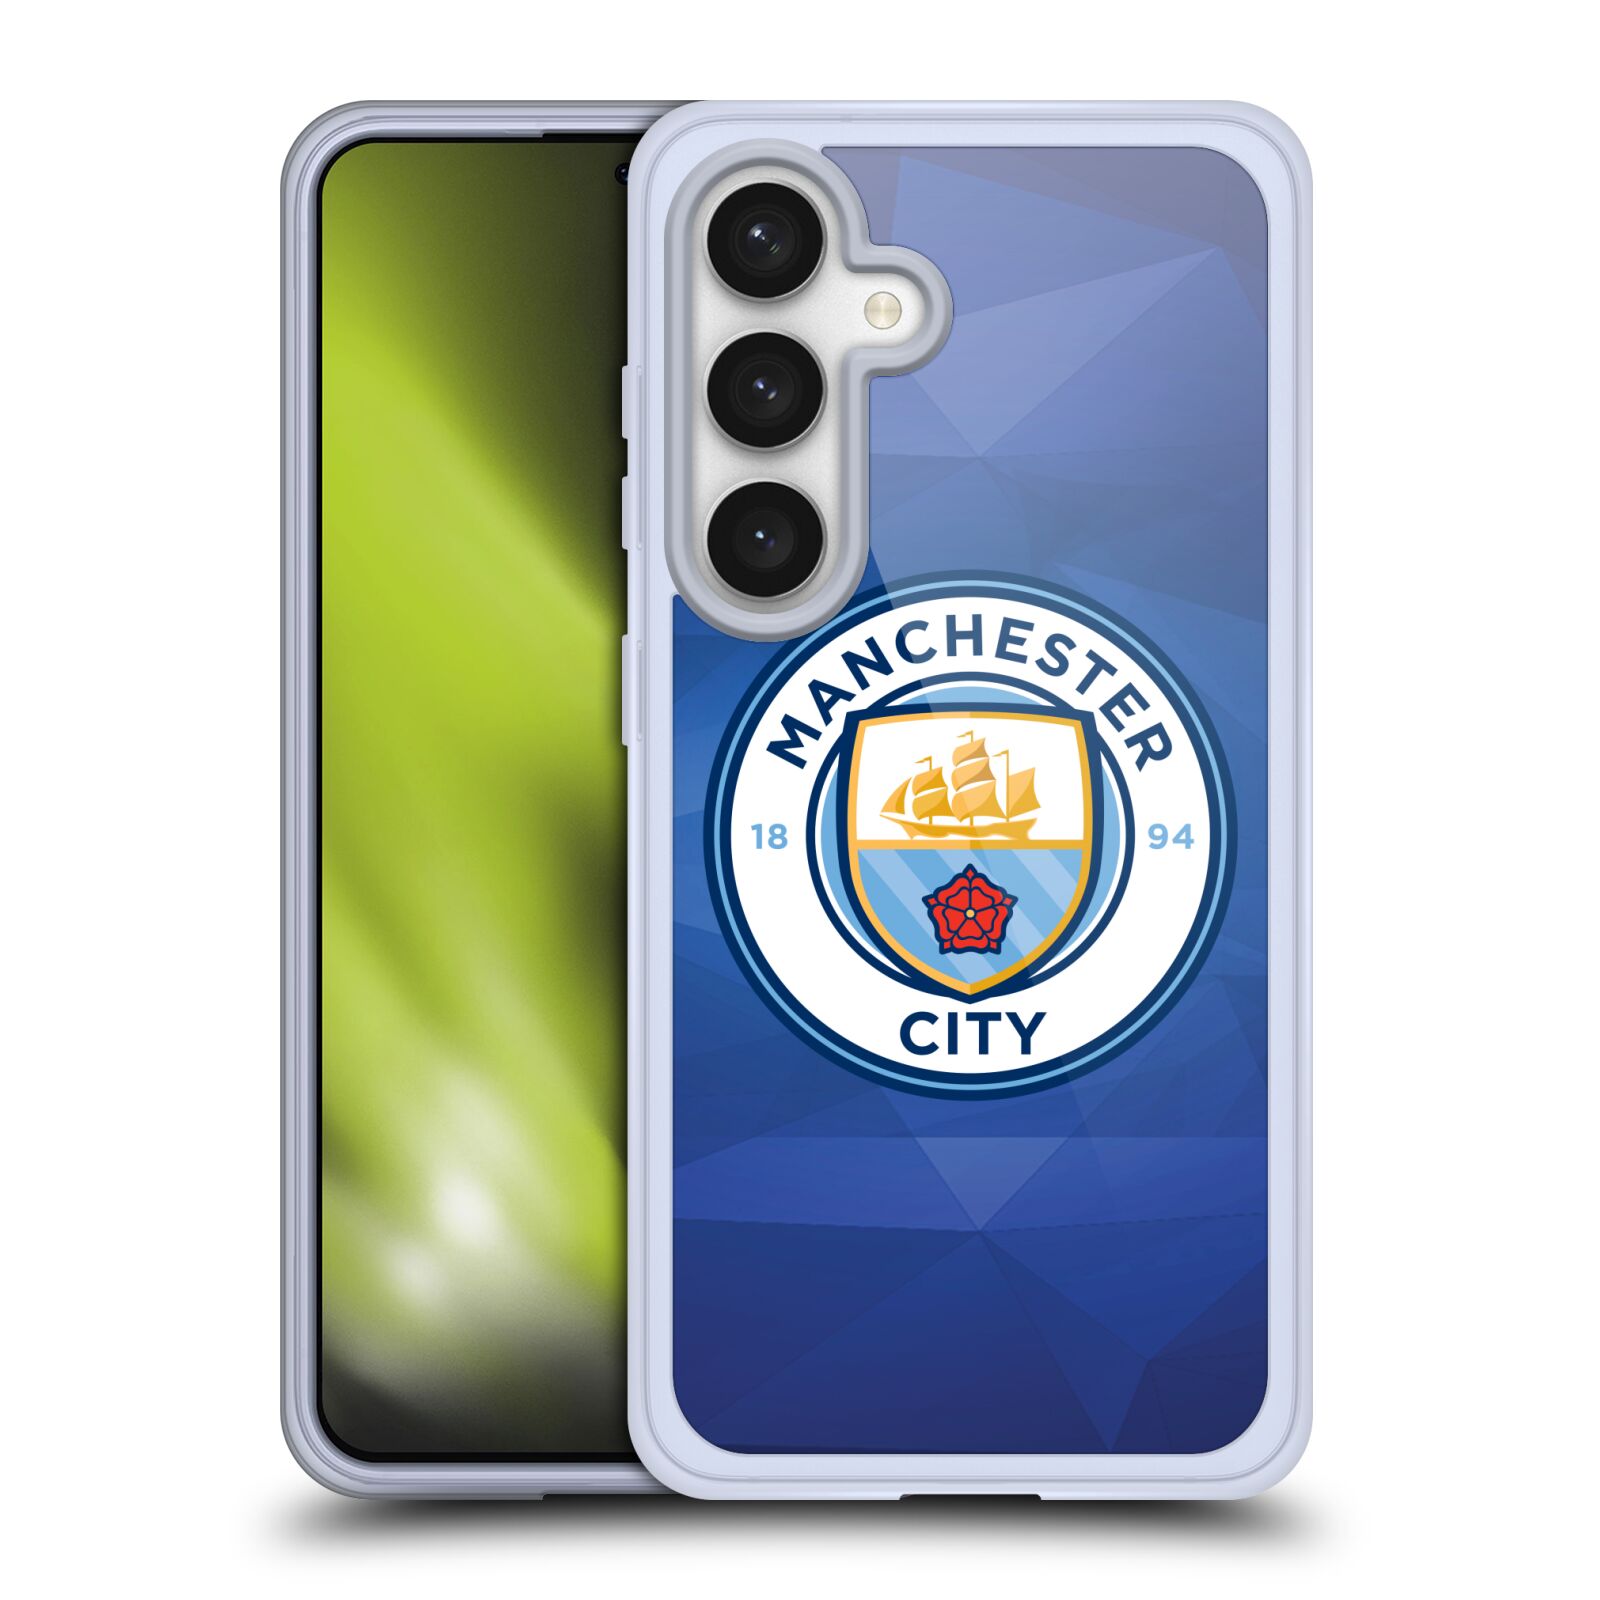 Silikonové lesklé pouzdro na mobil Samsung Galaxy S24 - Head Case - Manchester City FC - Modré nové logo (Silikonový kryt, obal, pouzdro na mobilní telefon Samsung Galaxy S24 s motivem Manchester City FC - Modré nové logo)